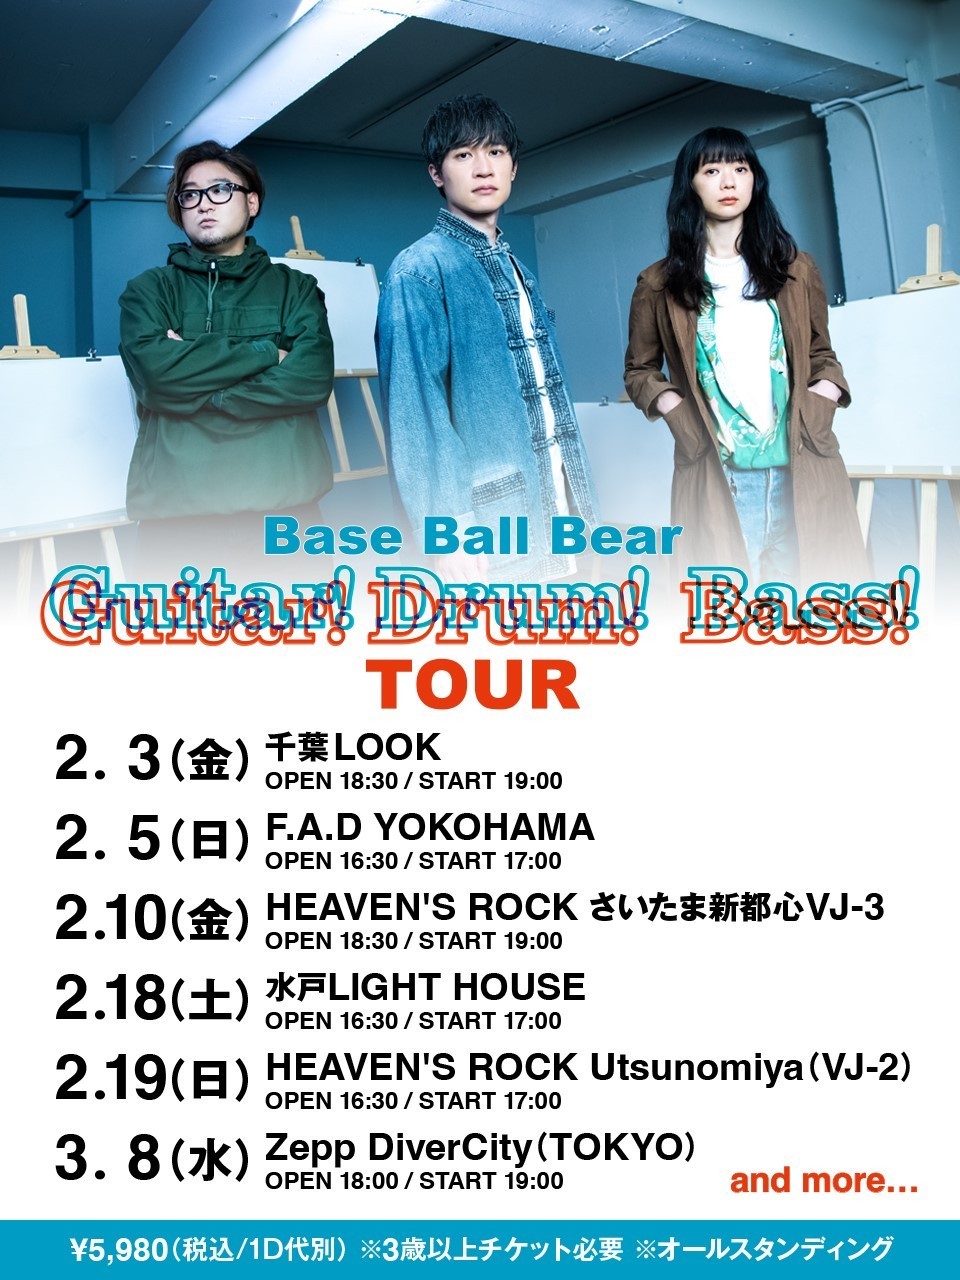 Base Ball Bear 『Guitar! Guitar! Drum! Drum! Bass! Bass! 』 TOUR